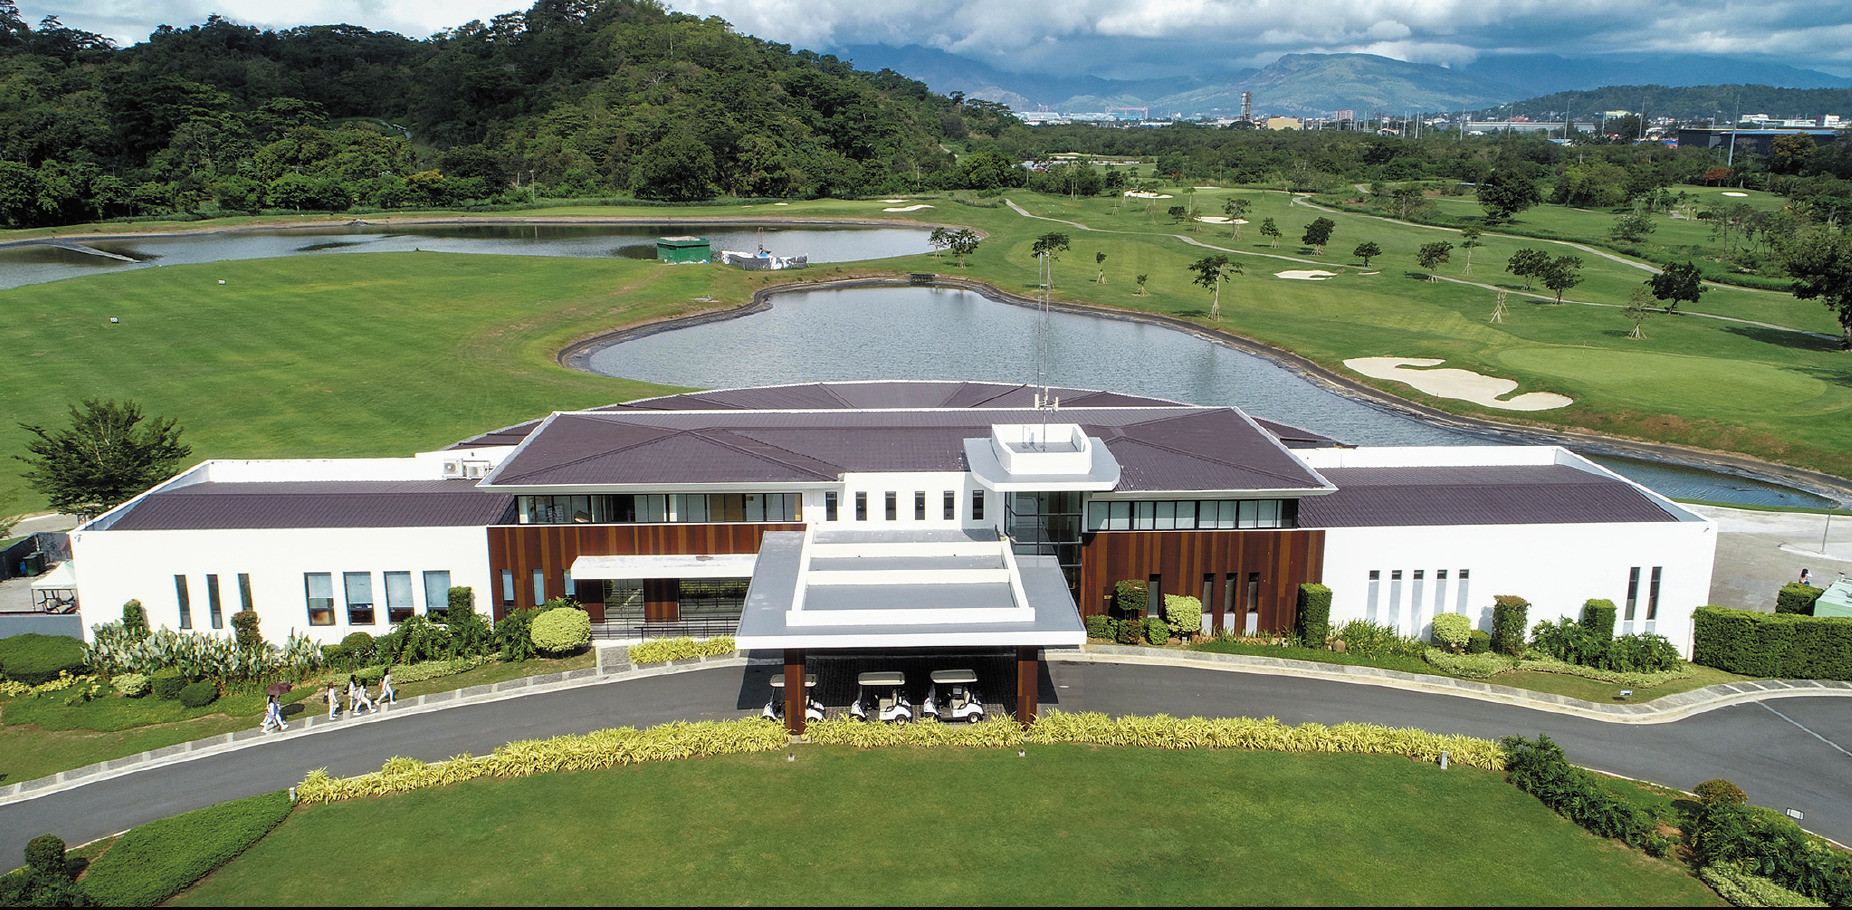 “登録者15万人ゴルフYouTuber”・なみきと行く「フィリピンのゴルフ旅」！